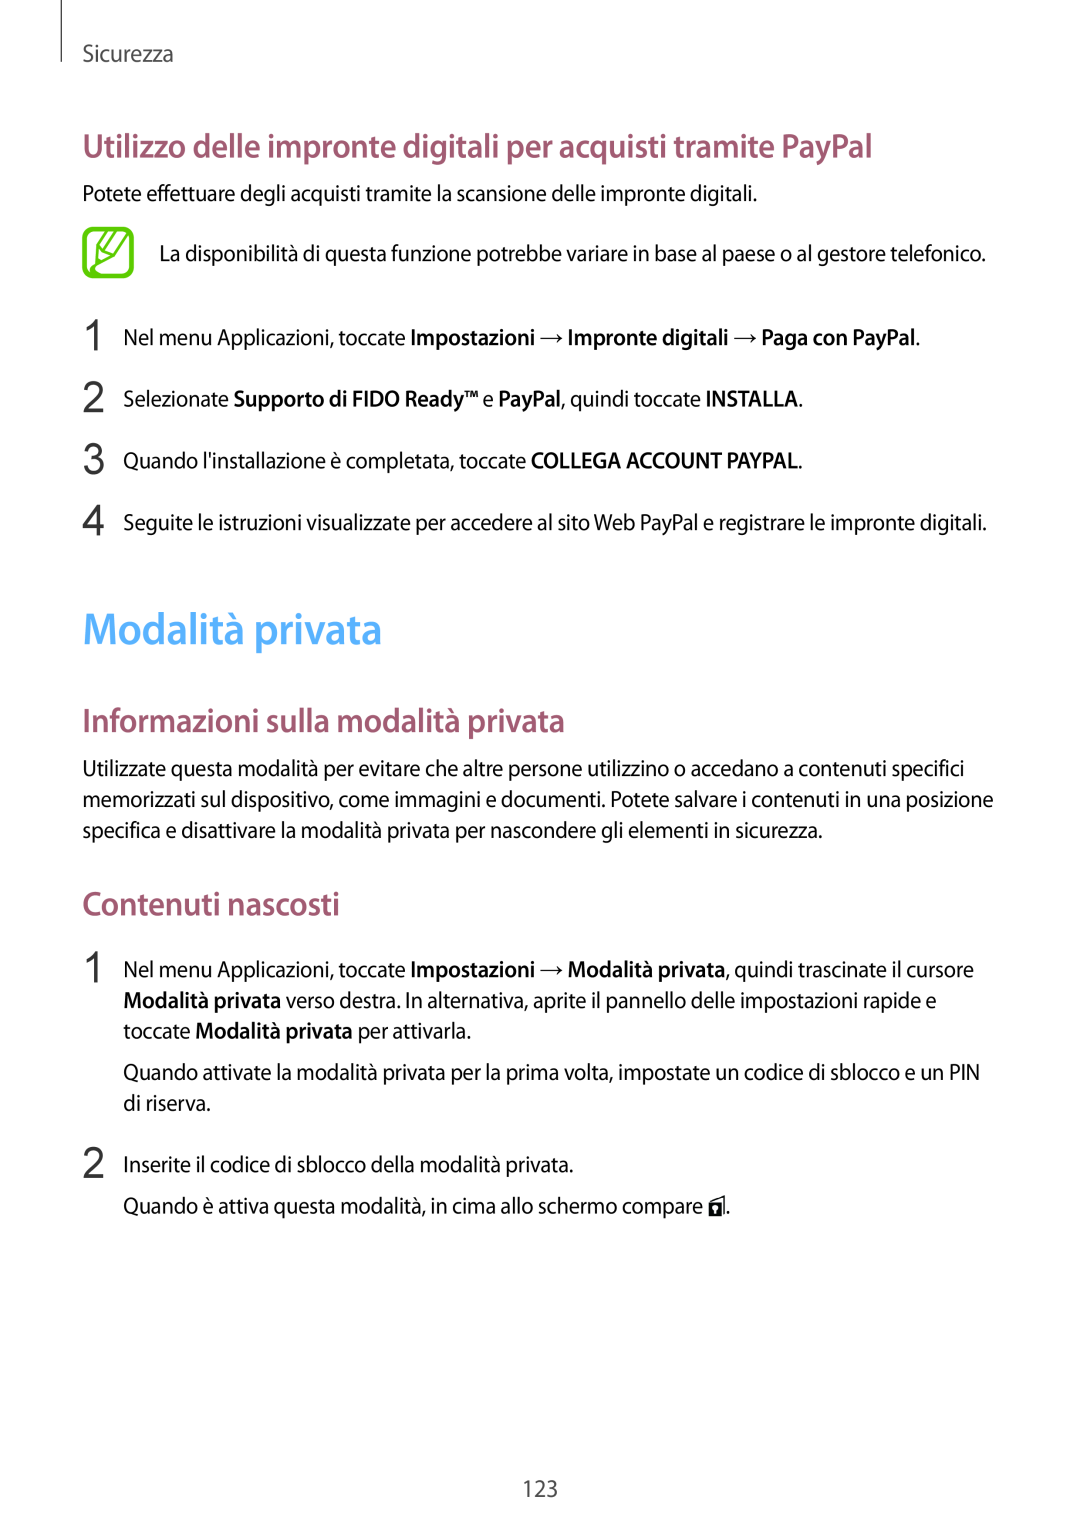 Samsung SM-G900FZKAFTM Modalità privata, Utilizzo delle impronte digitali per acquisti tramite PayPal, Contenuti nascosti 